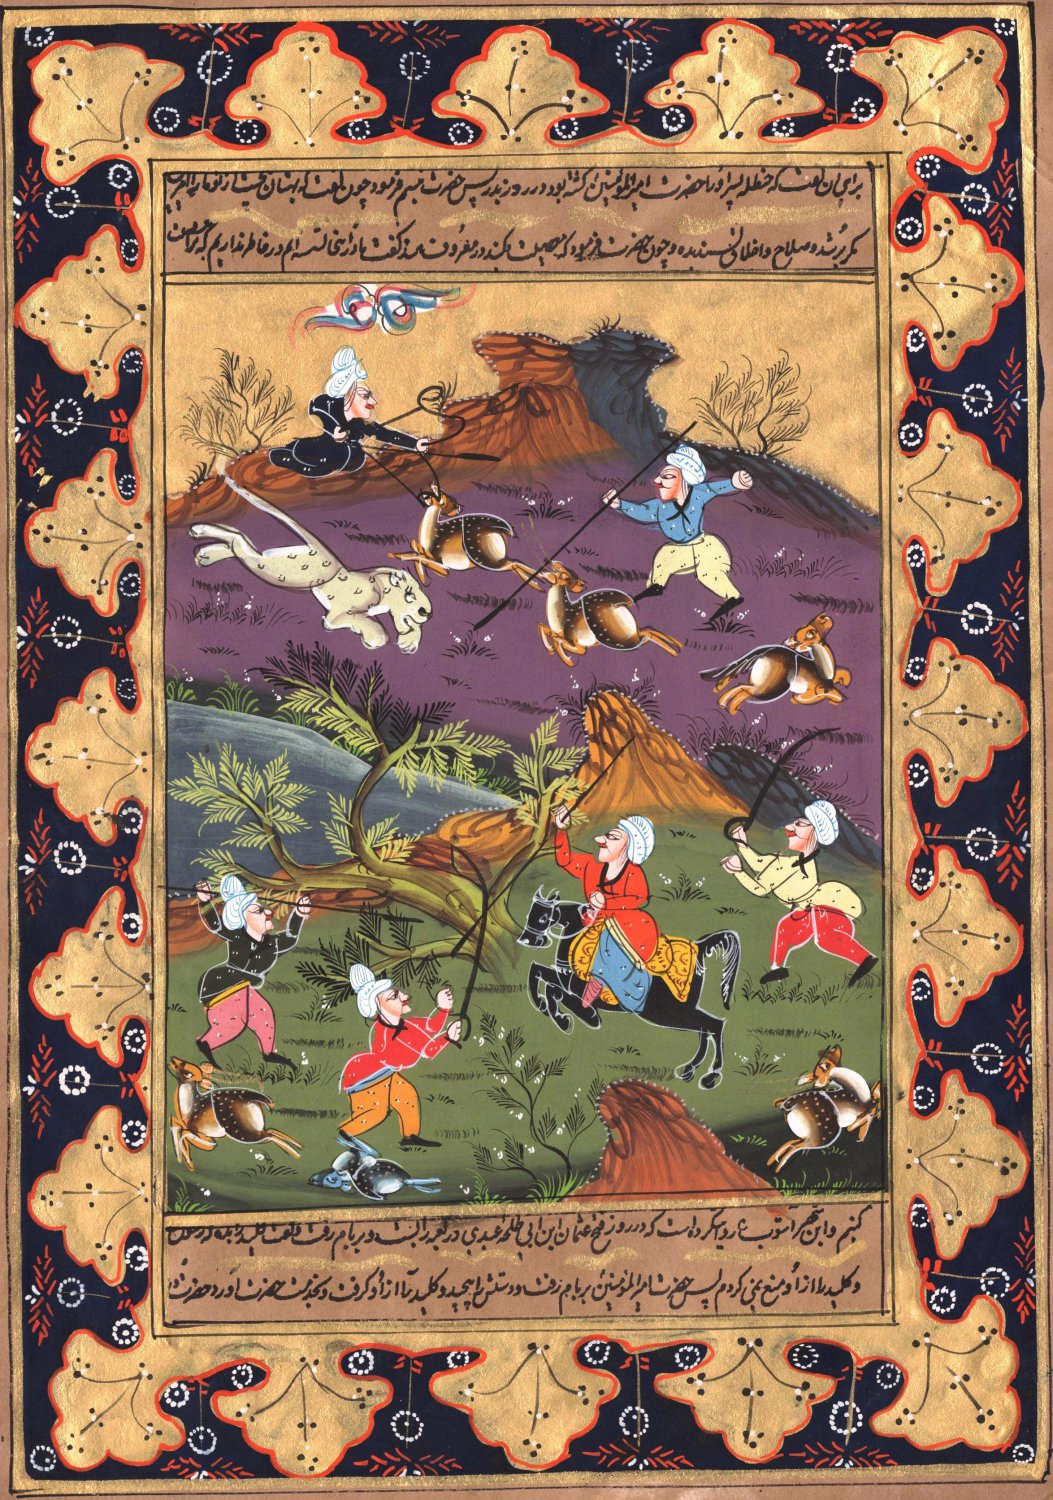 Indian Art Persian Islamic Illuminated Manuscript Handmade Miniature Painting